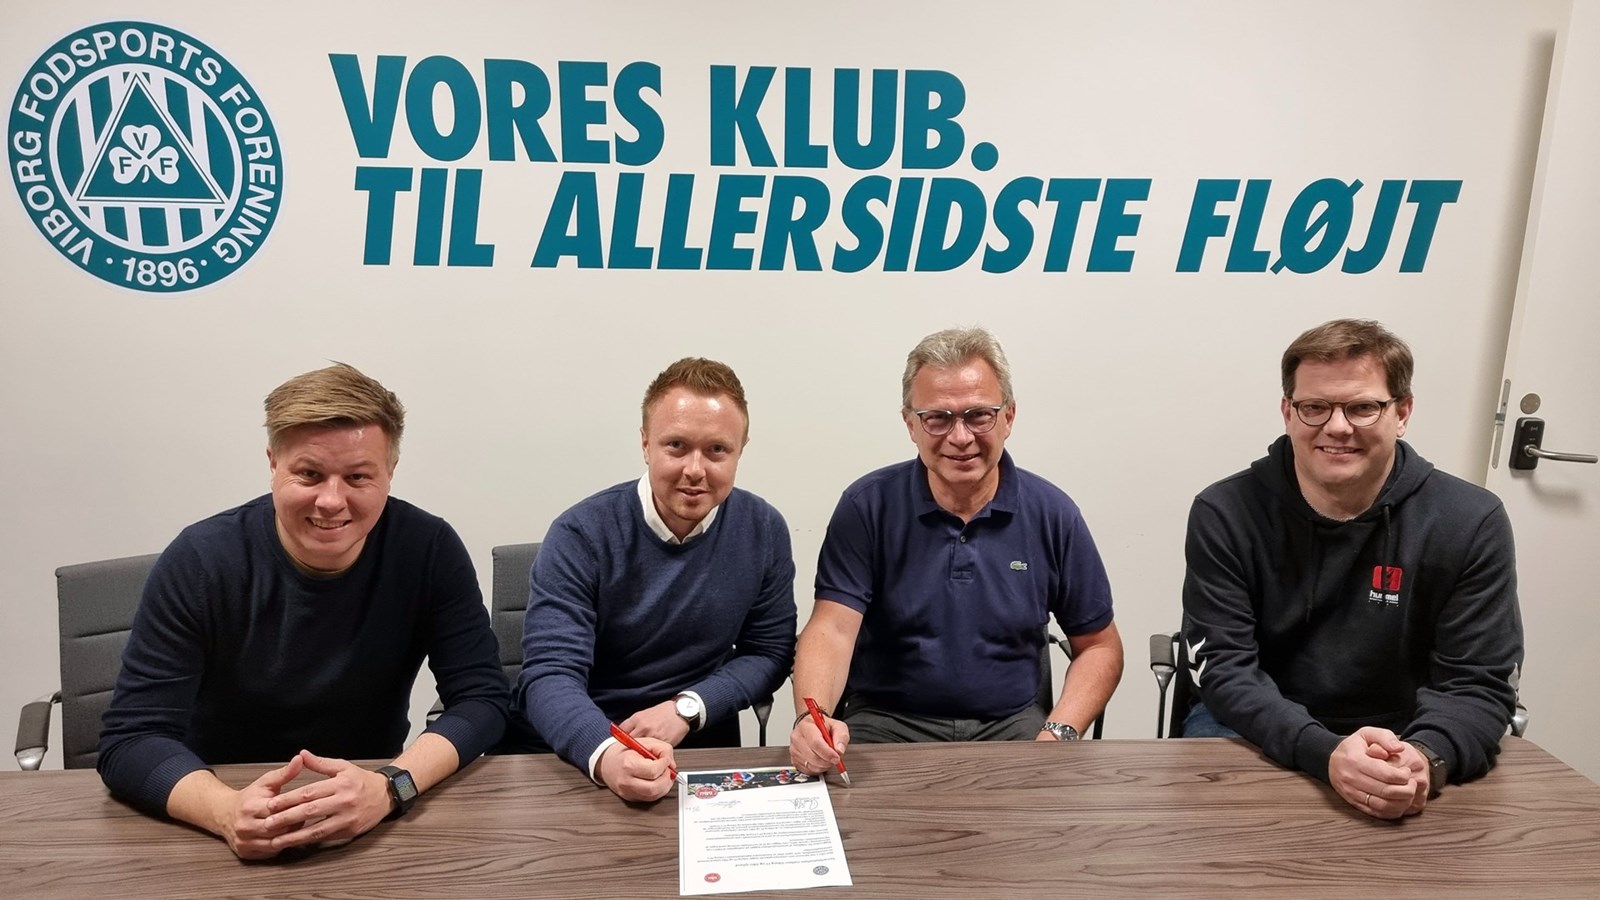 Børnefodbold: Viborg FF hopper med på vognen i stort samarbejde med DBU Jylland